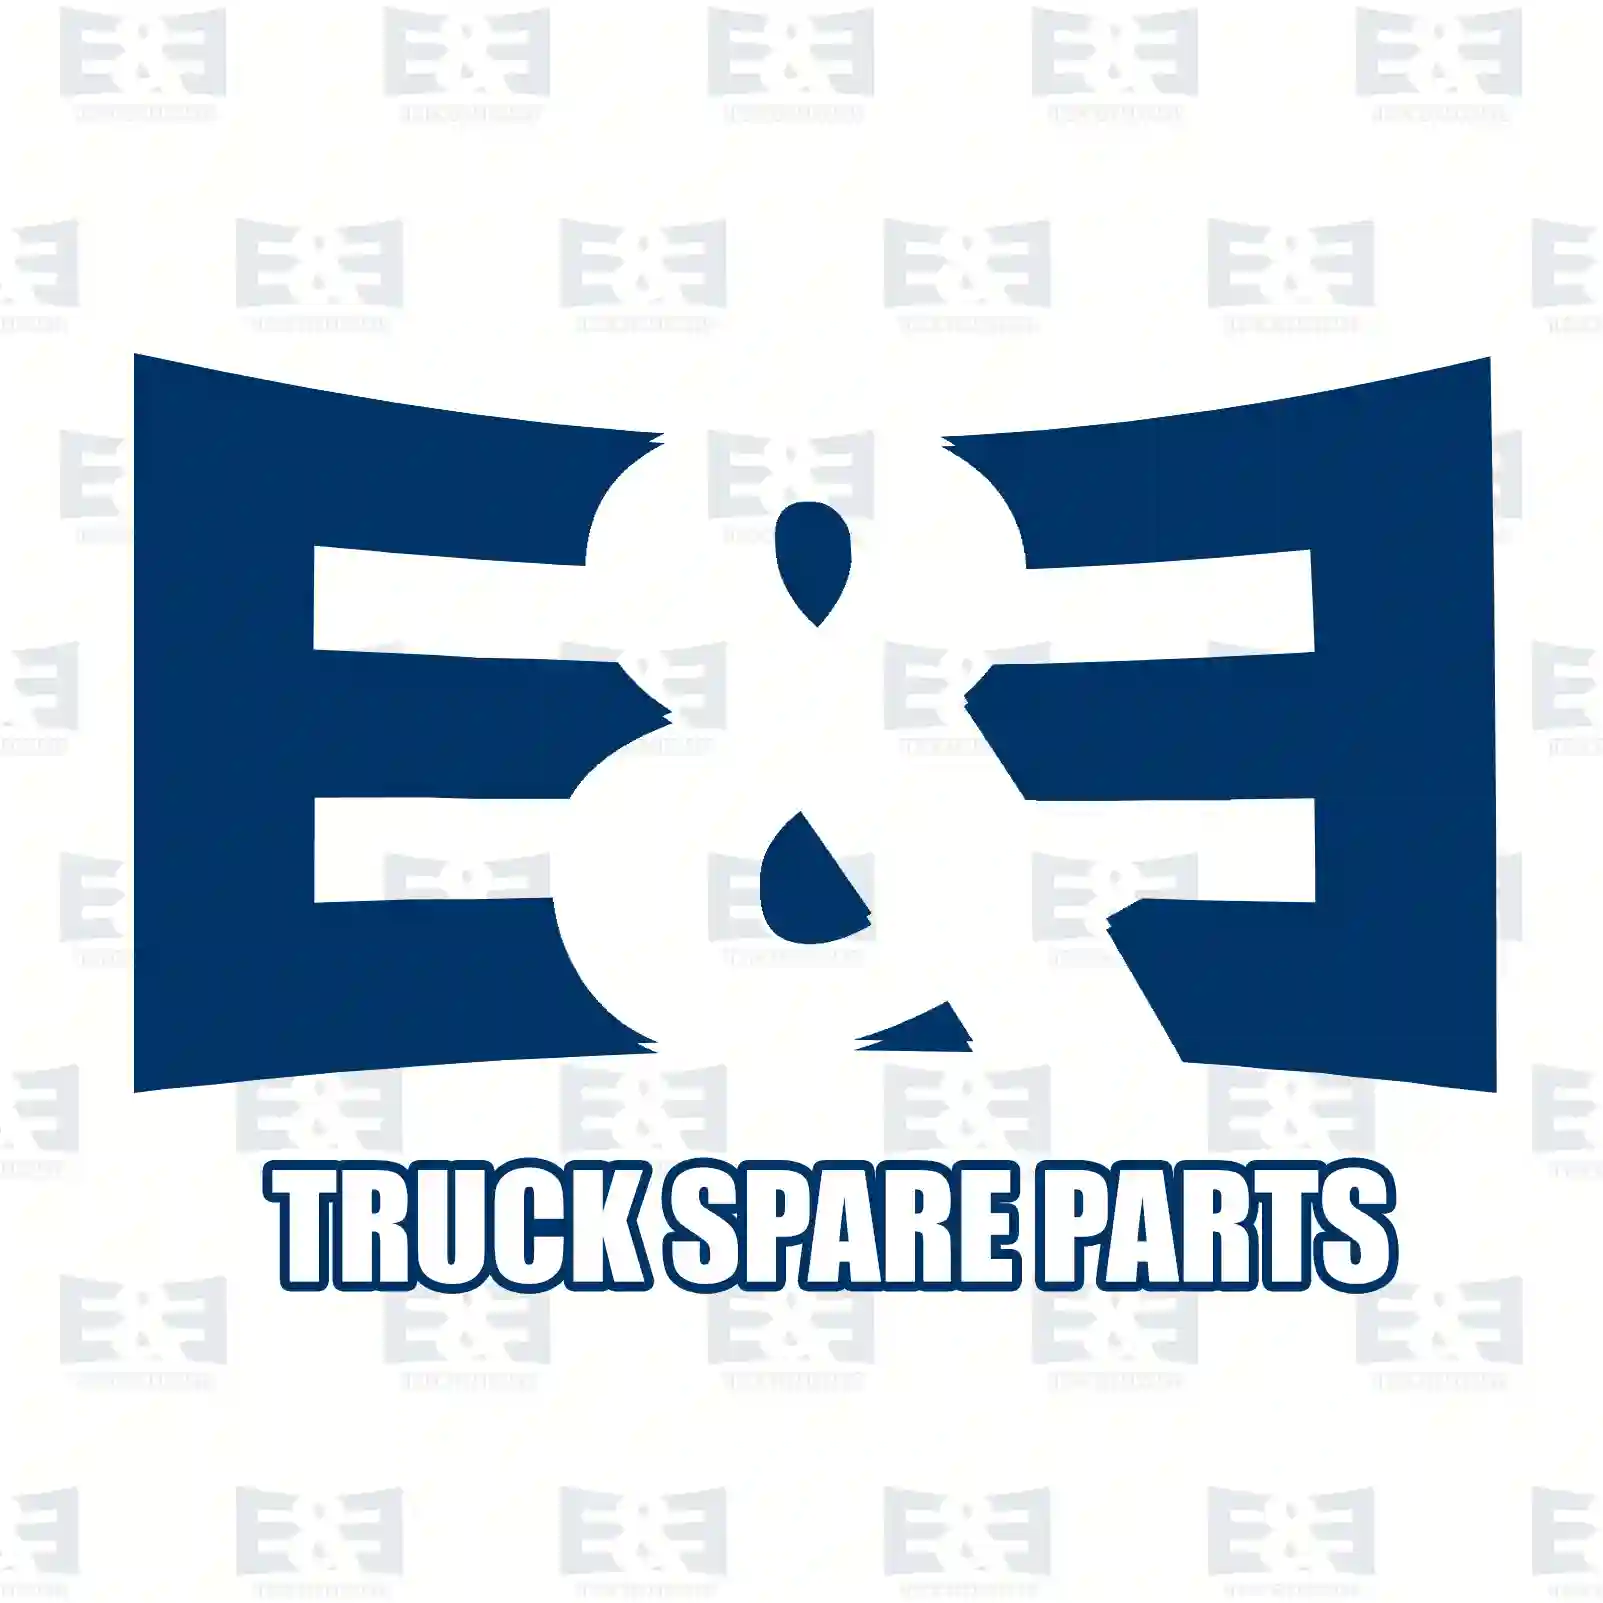 Shock absorber, 2E2283929, 345496, 2376007001, , , , ||  2E2283929 E&E Truck Spare Parts | Truck Spare Parts, Auotomotive Spare Parts Shock absorber, 2E2283929, 345496, 2376007001, , , , ||  2E2283929 E&E Truck Spare Parts | Truck Spare Parts, Auotomotive Spare Parts